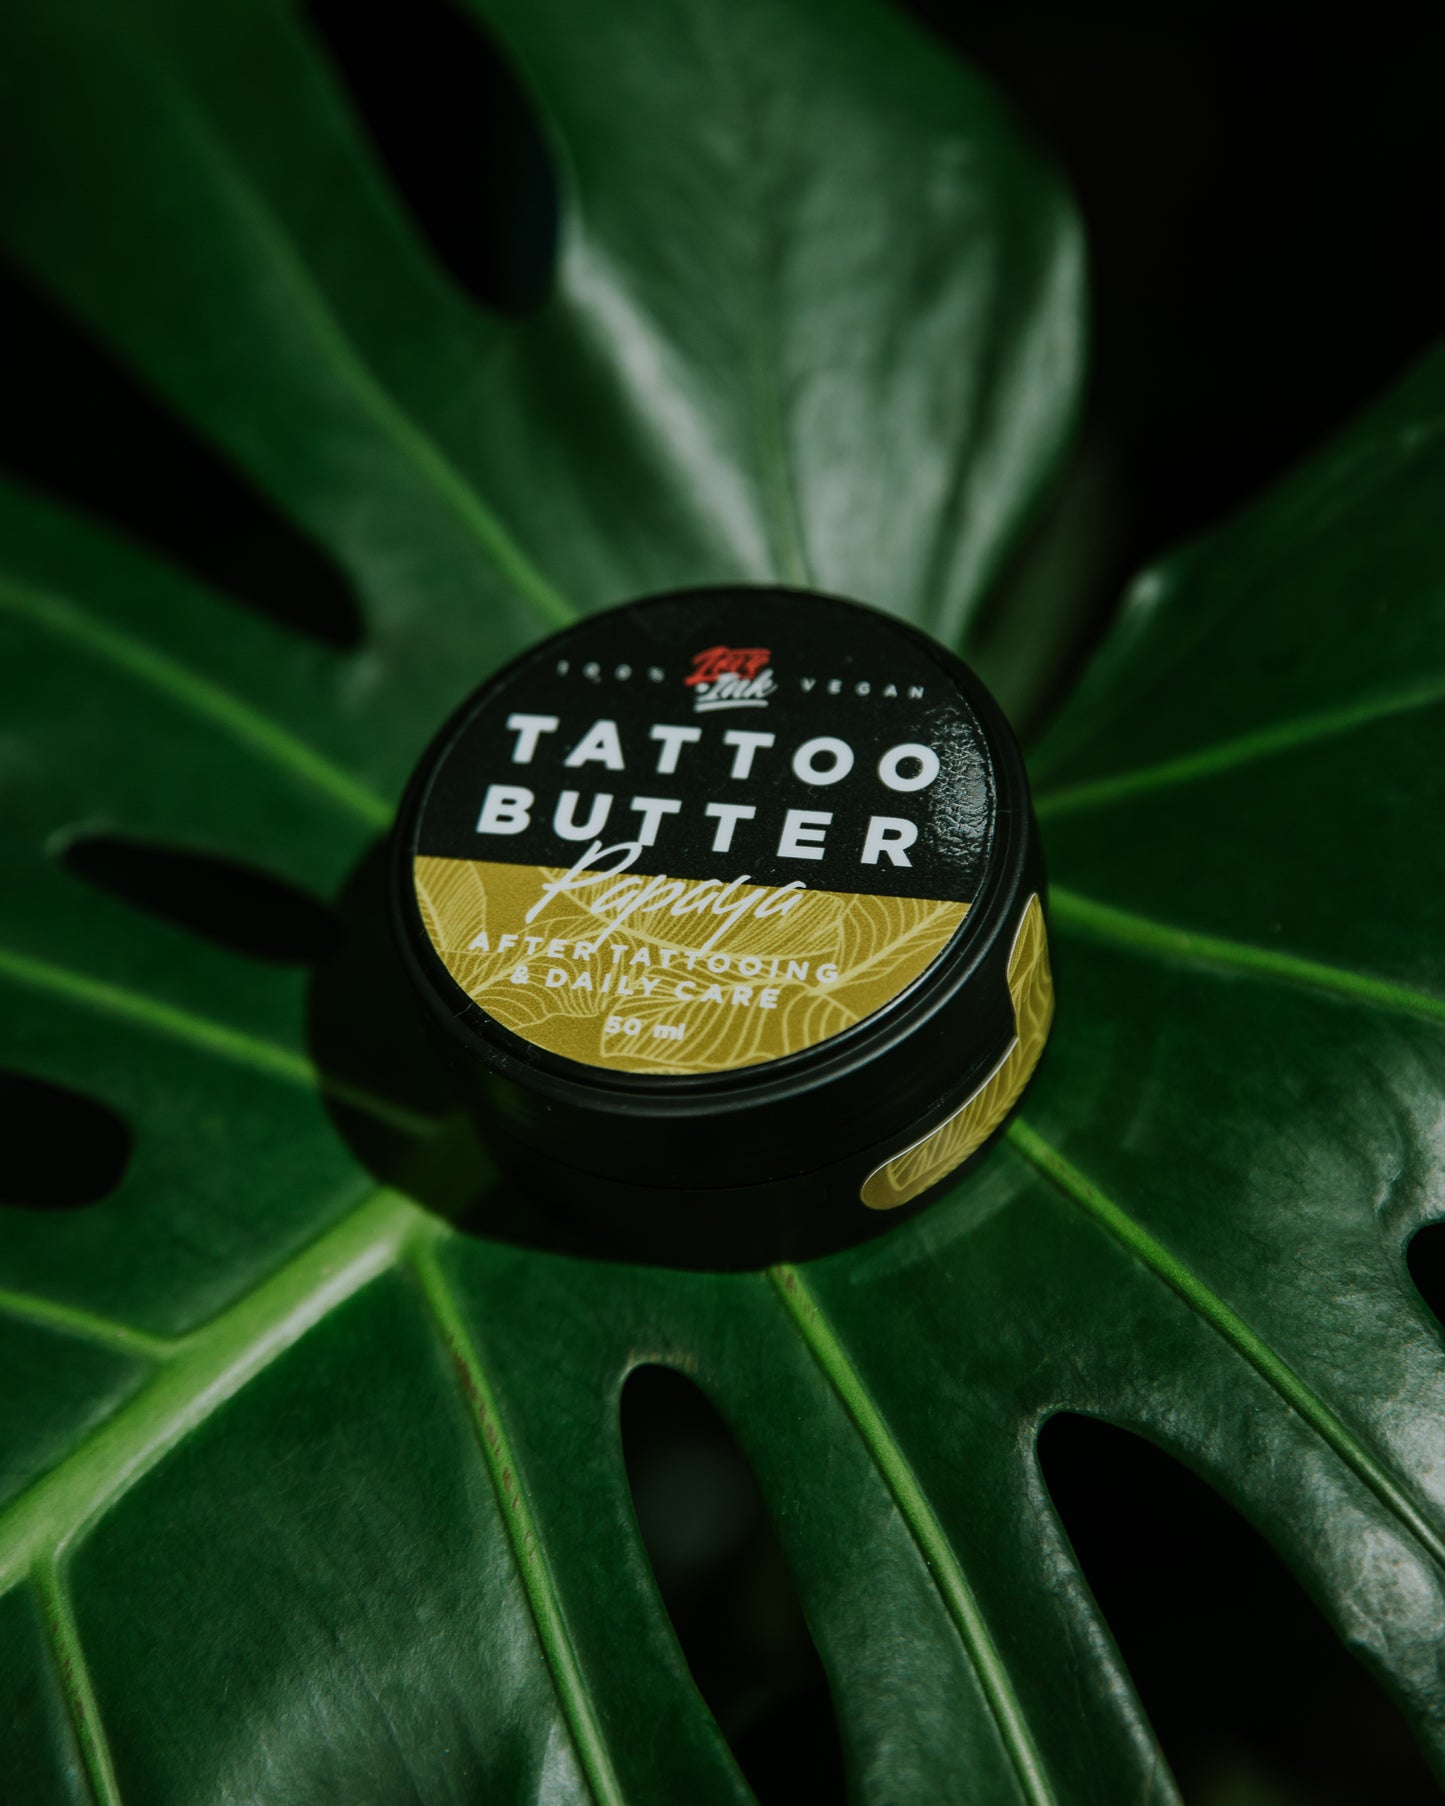 Tattoo Butter Papaya 50ml